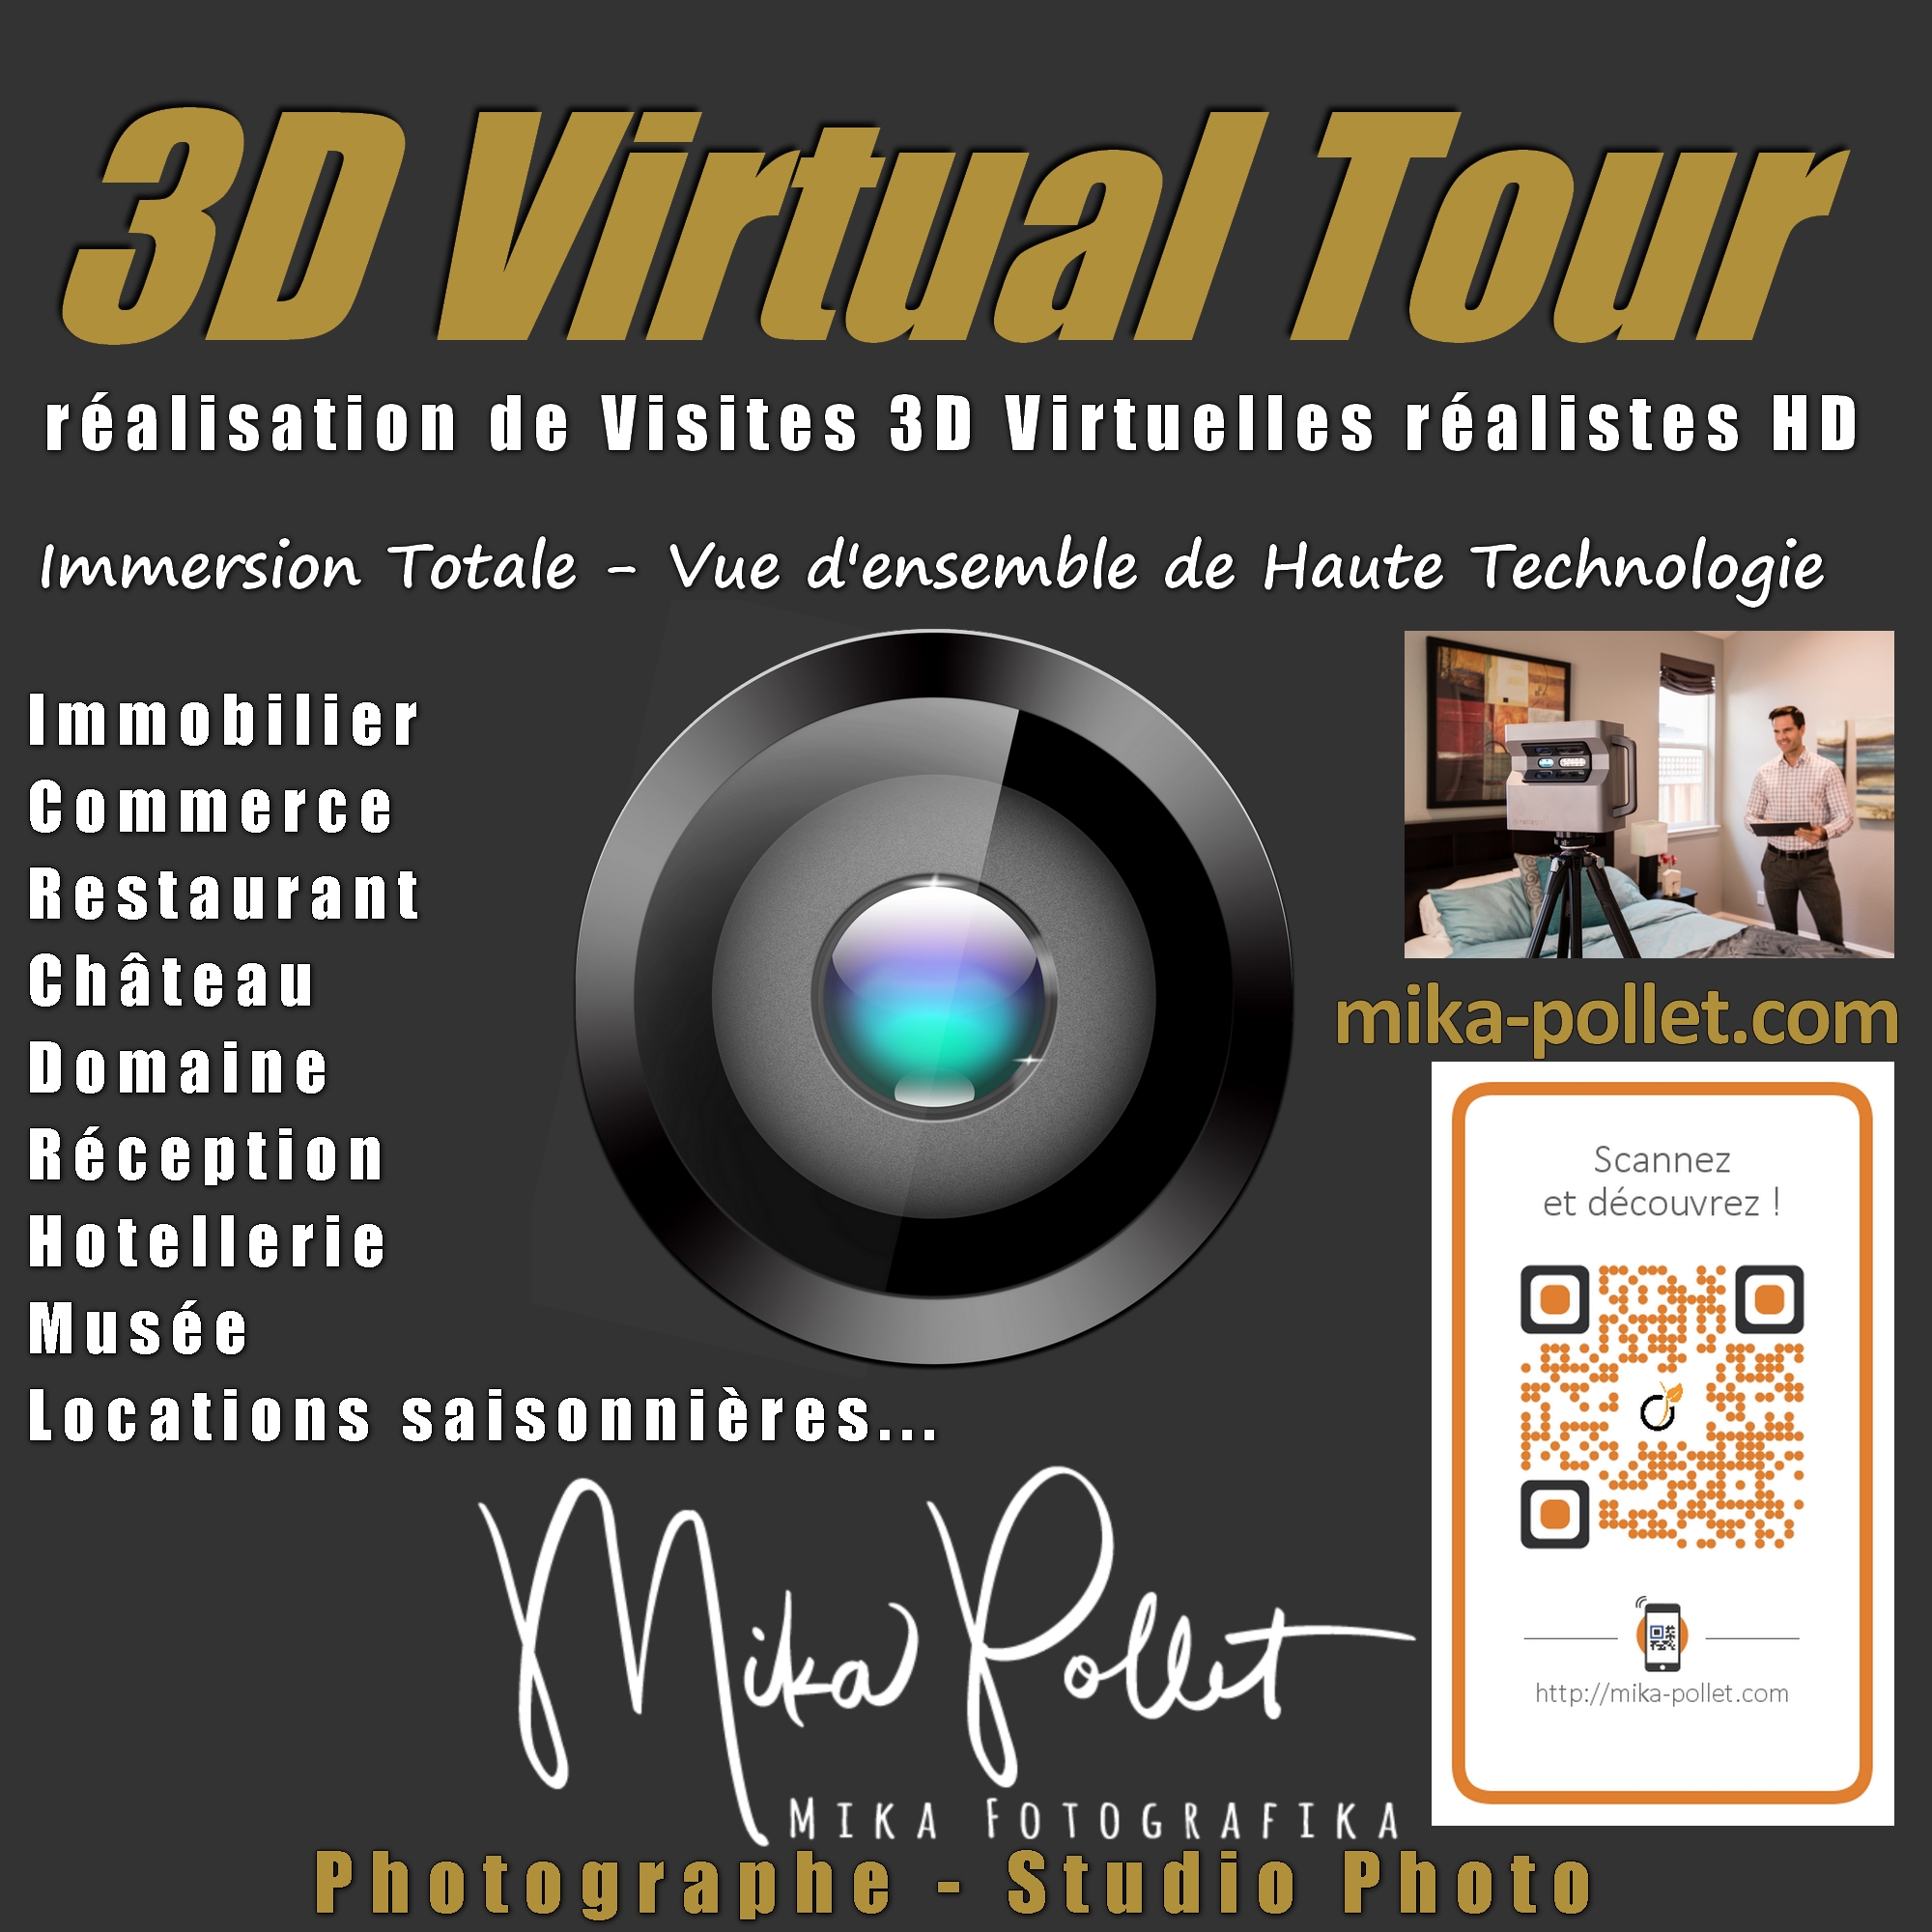 Mika3D Virtual Tour Visites Virtuelles 3d en Rhone alpes auvergne 